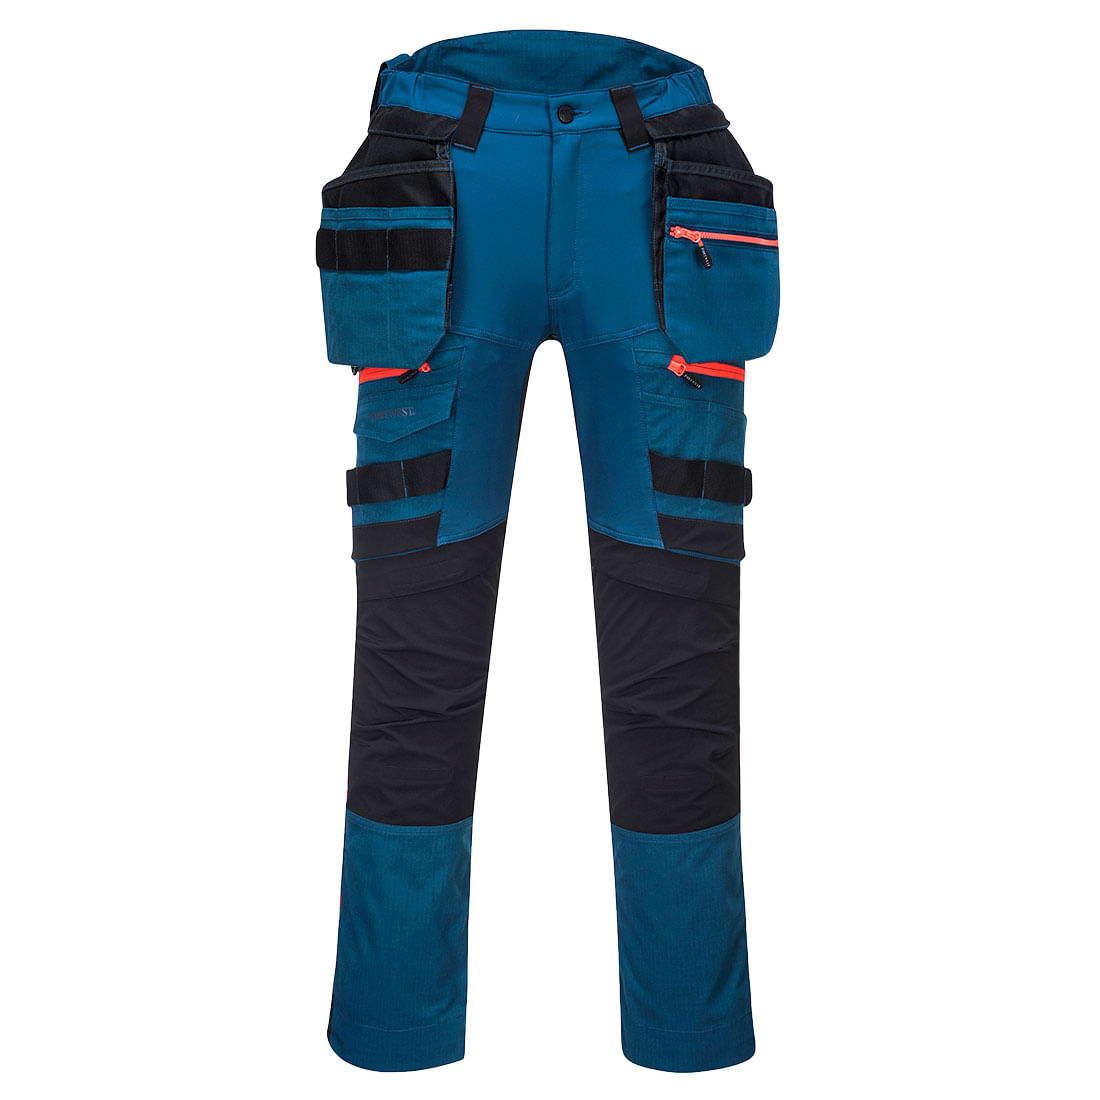 Pantaloni de protectie negru/albastru Portwest DX3 Marime 30 dacris.net imagine 2022 depozituldepapetarie.ro